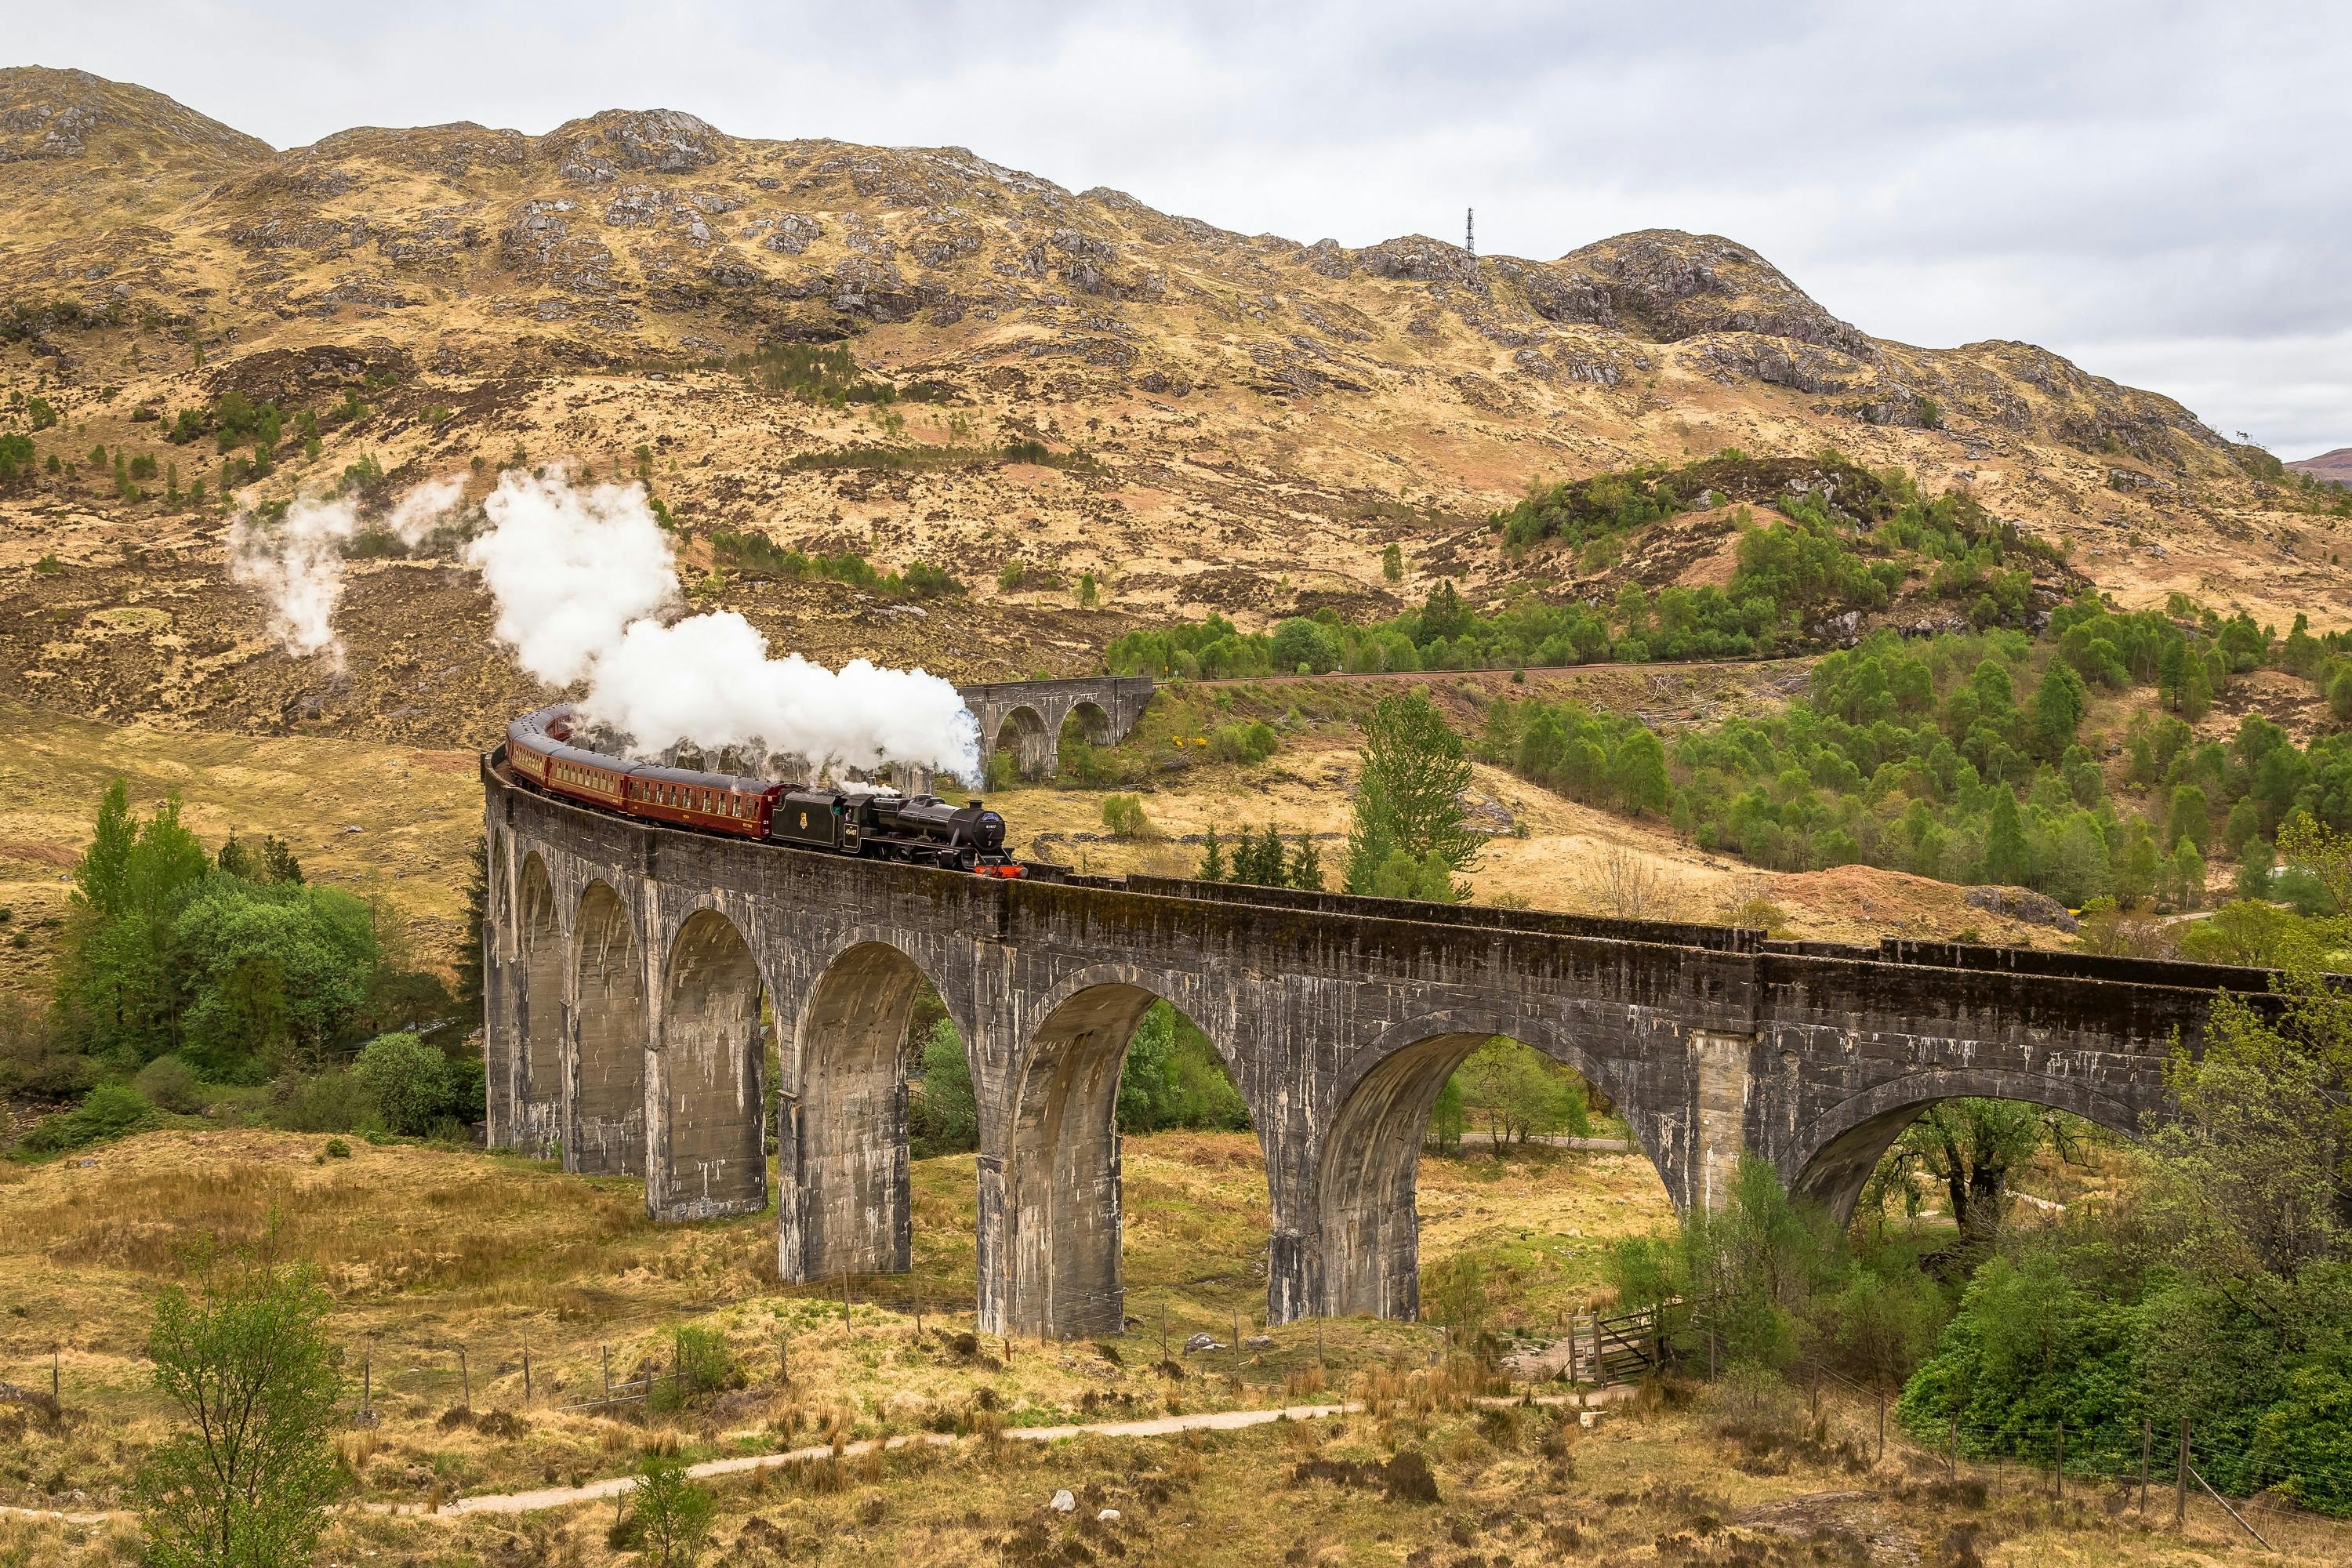 5-tägige Tour zur Isle of Skye, Loch Ness und Inverness mit der Jacobite-Dampfeisenbahn